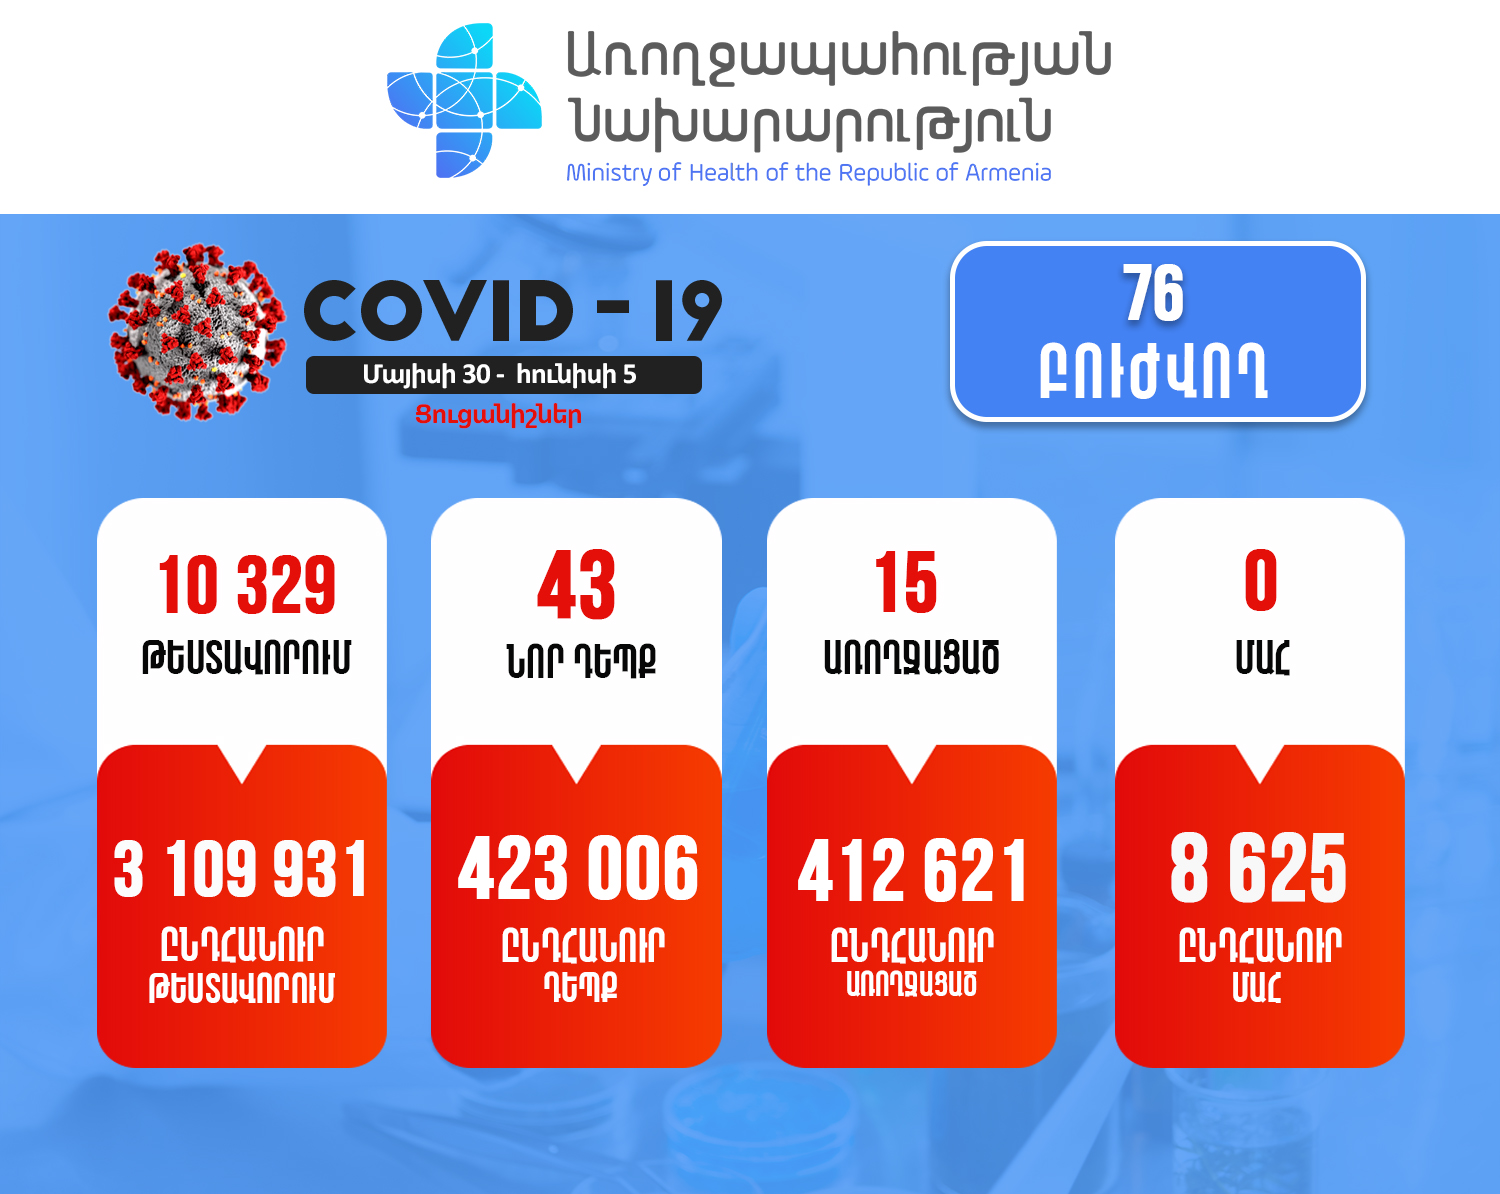 Հայաստանում վերջին մեկ շաբաթում հաստատվել է կորոնավիրուսի 43 նոր դեպք